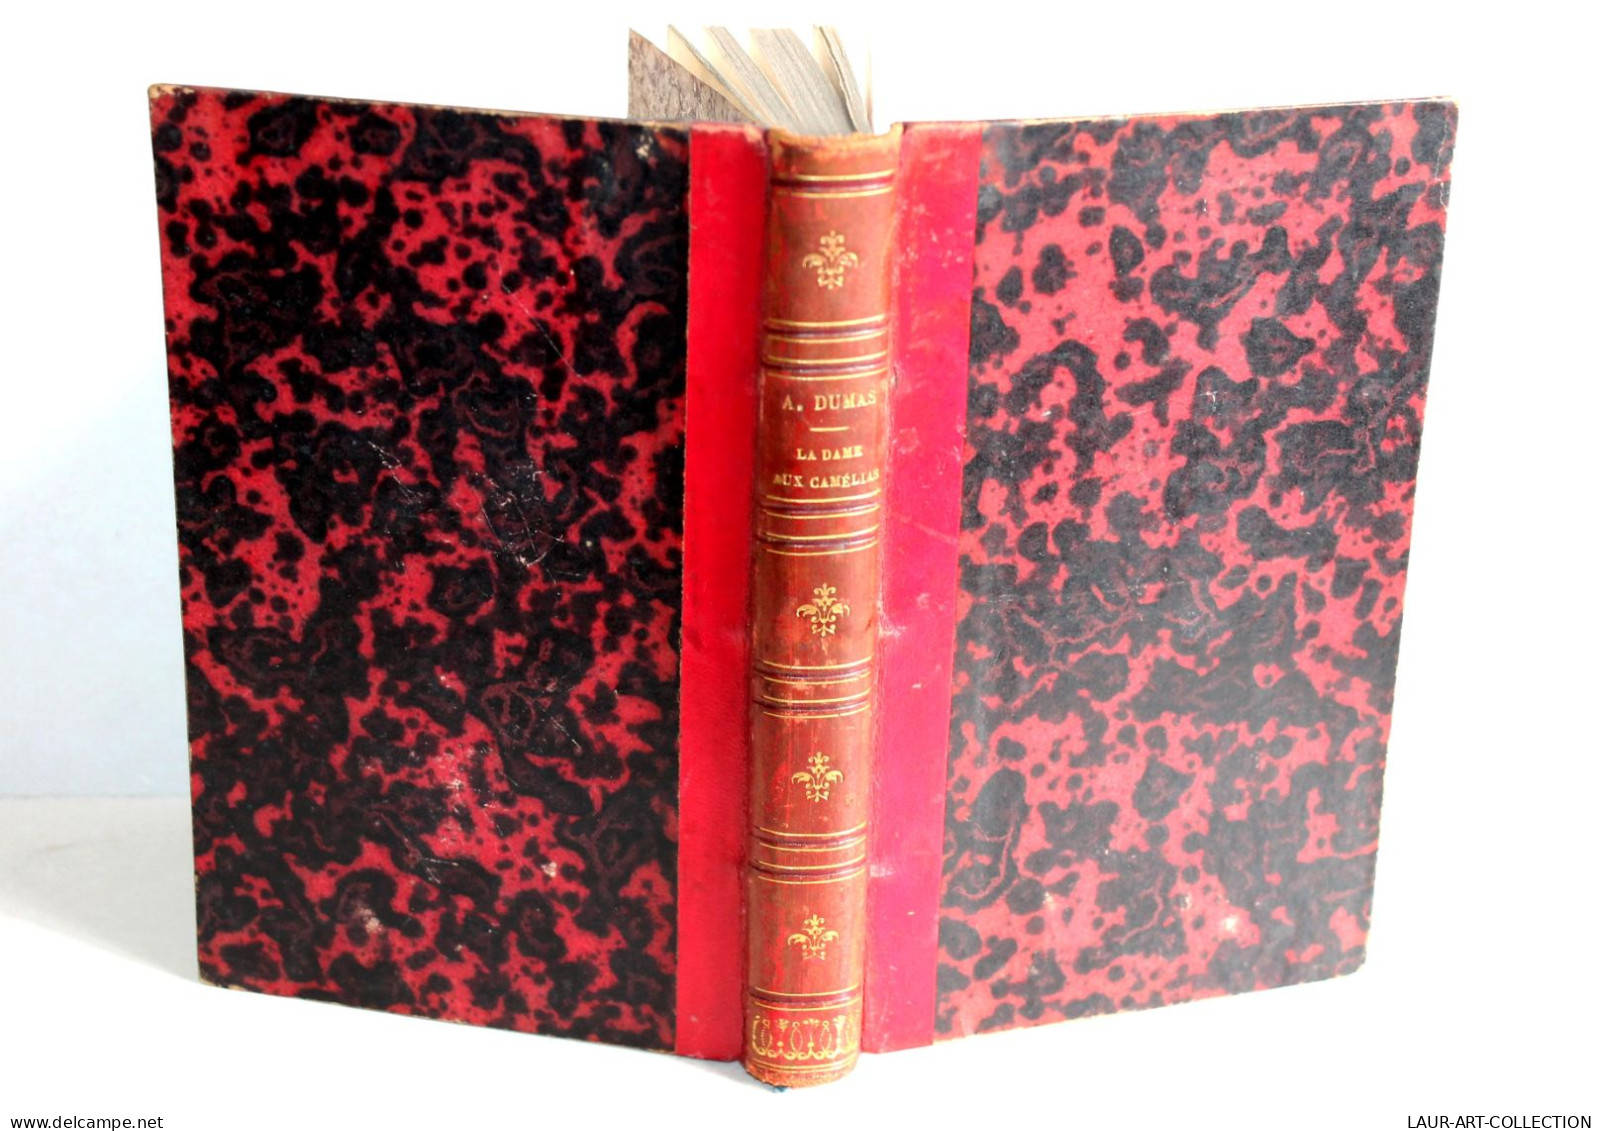 LA DAME AUX CAMELIAS Par DUMAS FILS, PREFACE De JANIN NOUVELLE EDITION 1856 LEVY / LIVRE ANCIEN XIXe SIECLE (1303.43) - 1801-1900